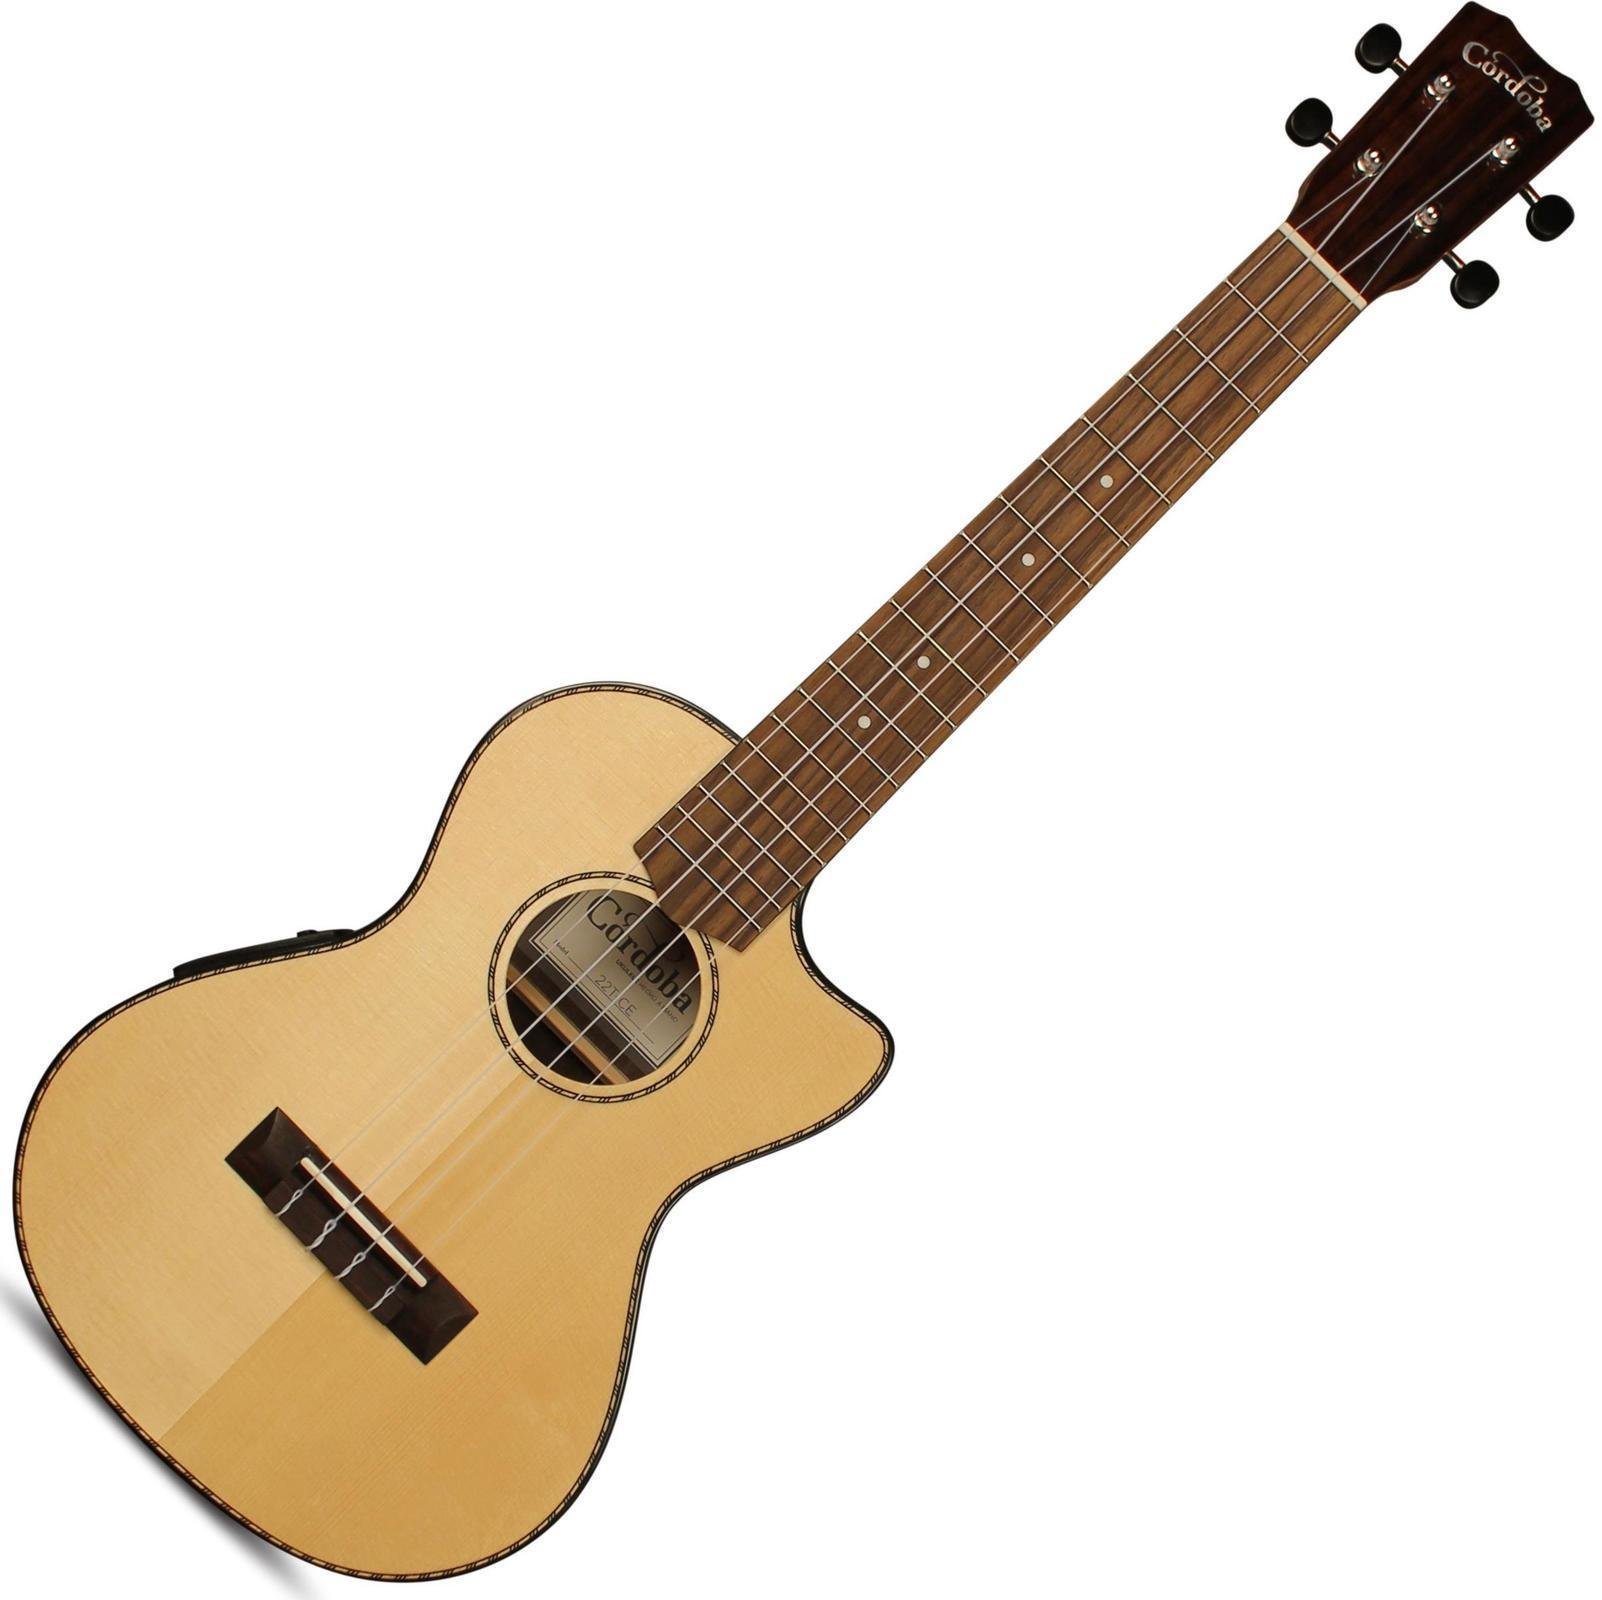 Tenori-ukulele Cordoba 22T-CE Tenor Size Electric Ukulele